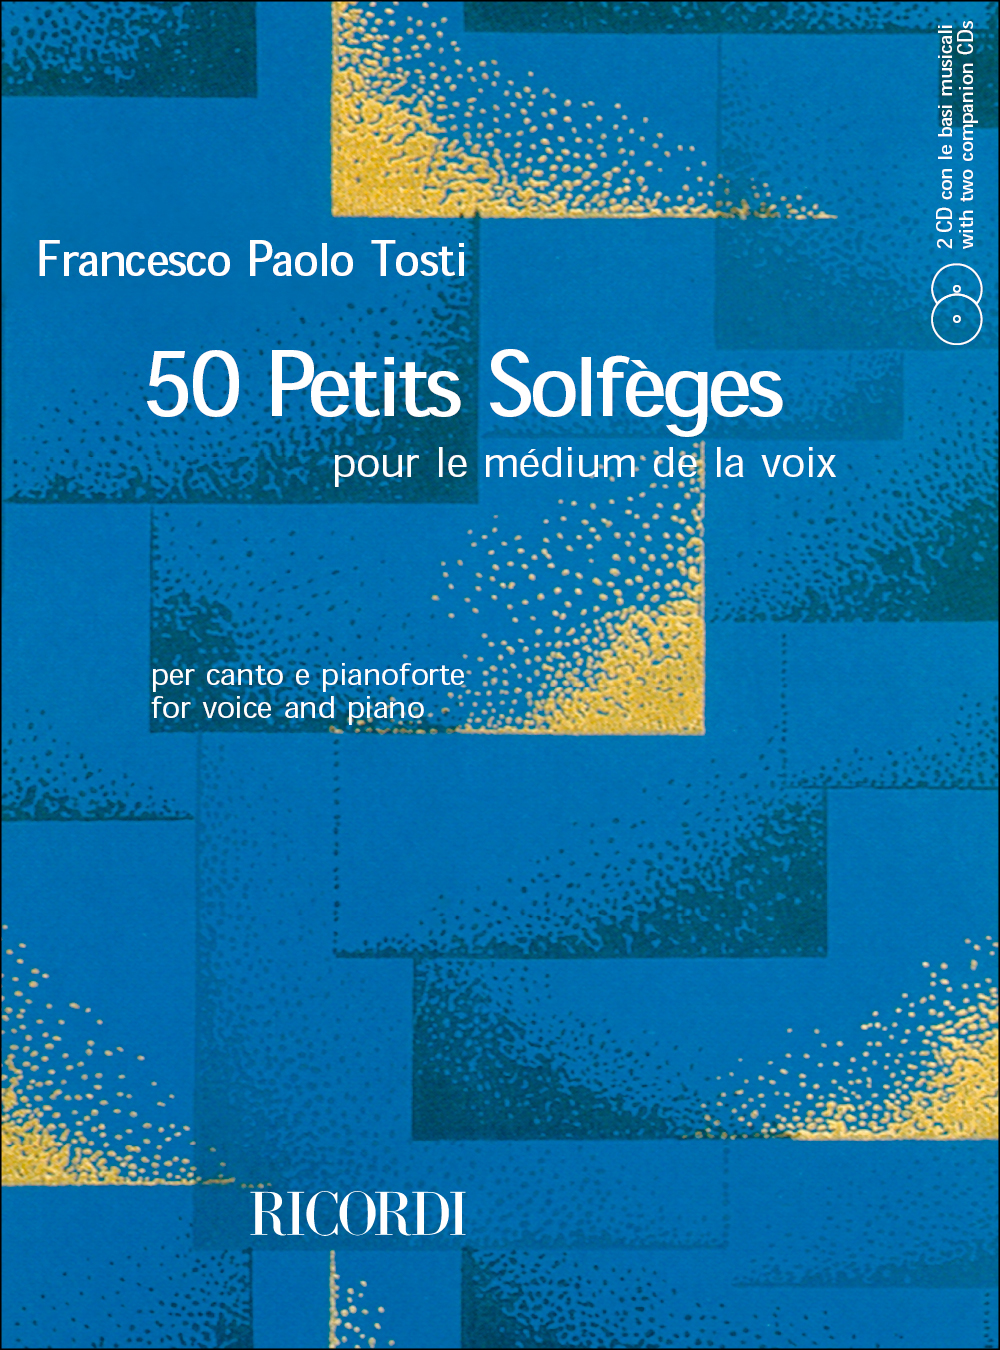 Francesco Paolo Tosti: 50 Petits Solfeges Pour Le Medium De La Voix: Solfege